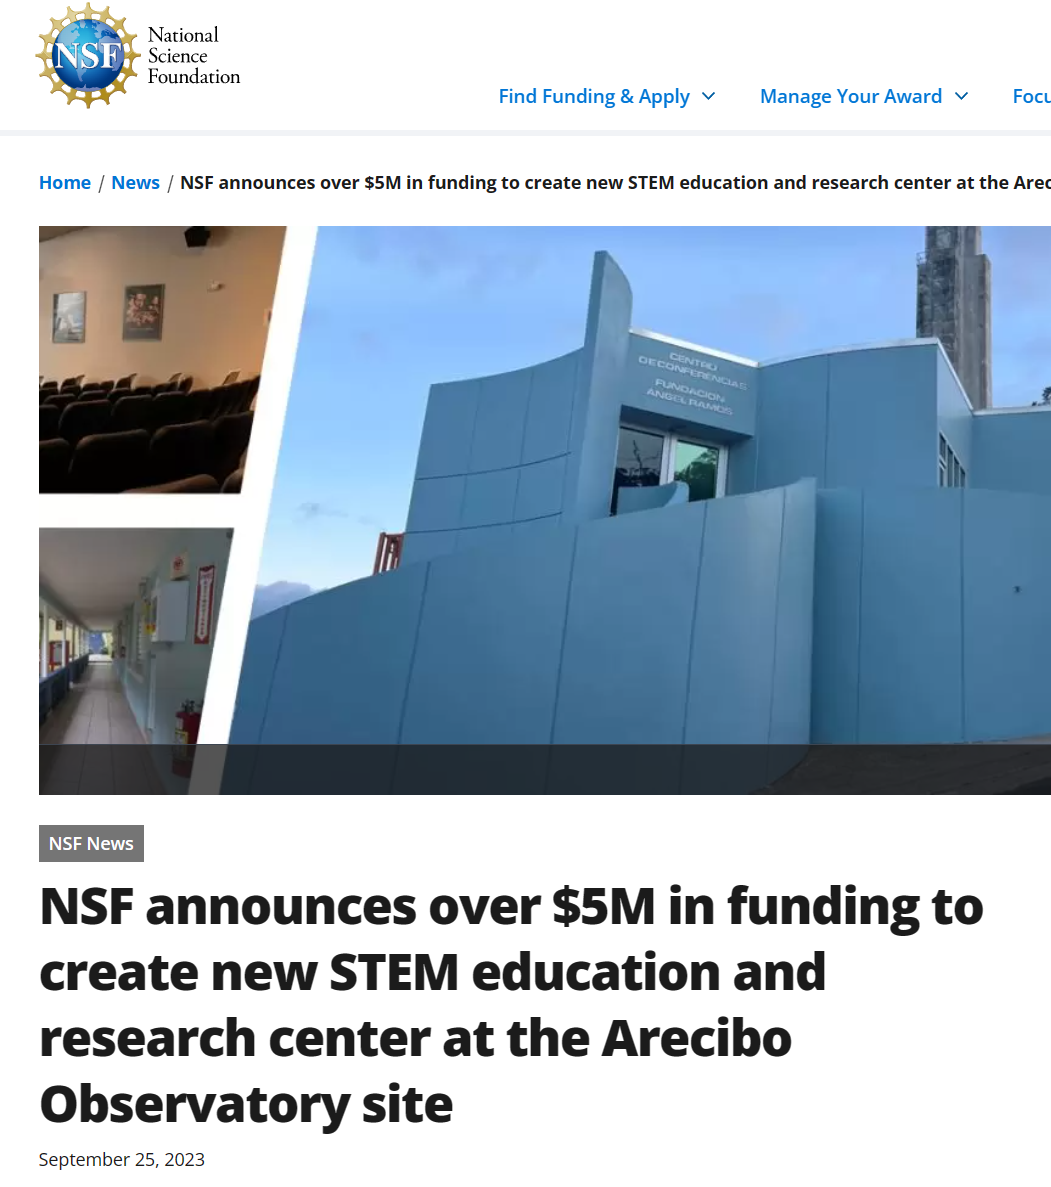 阿雷西博望远镜退役，将投资 550 万美元打造科学教育中心